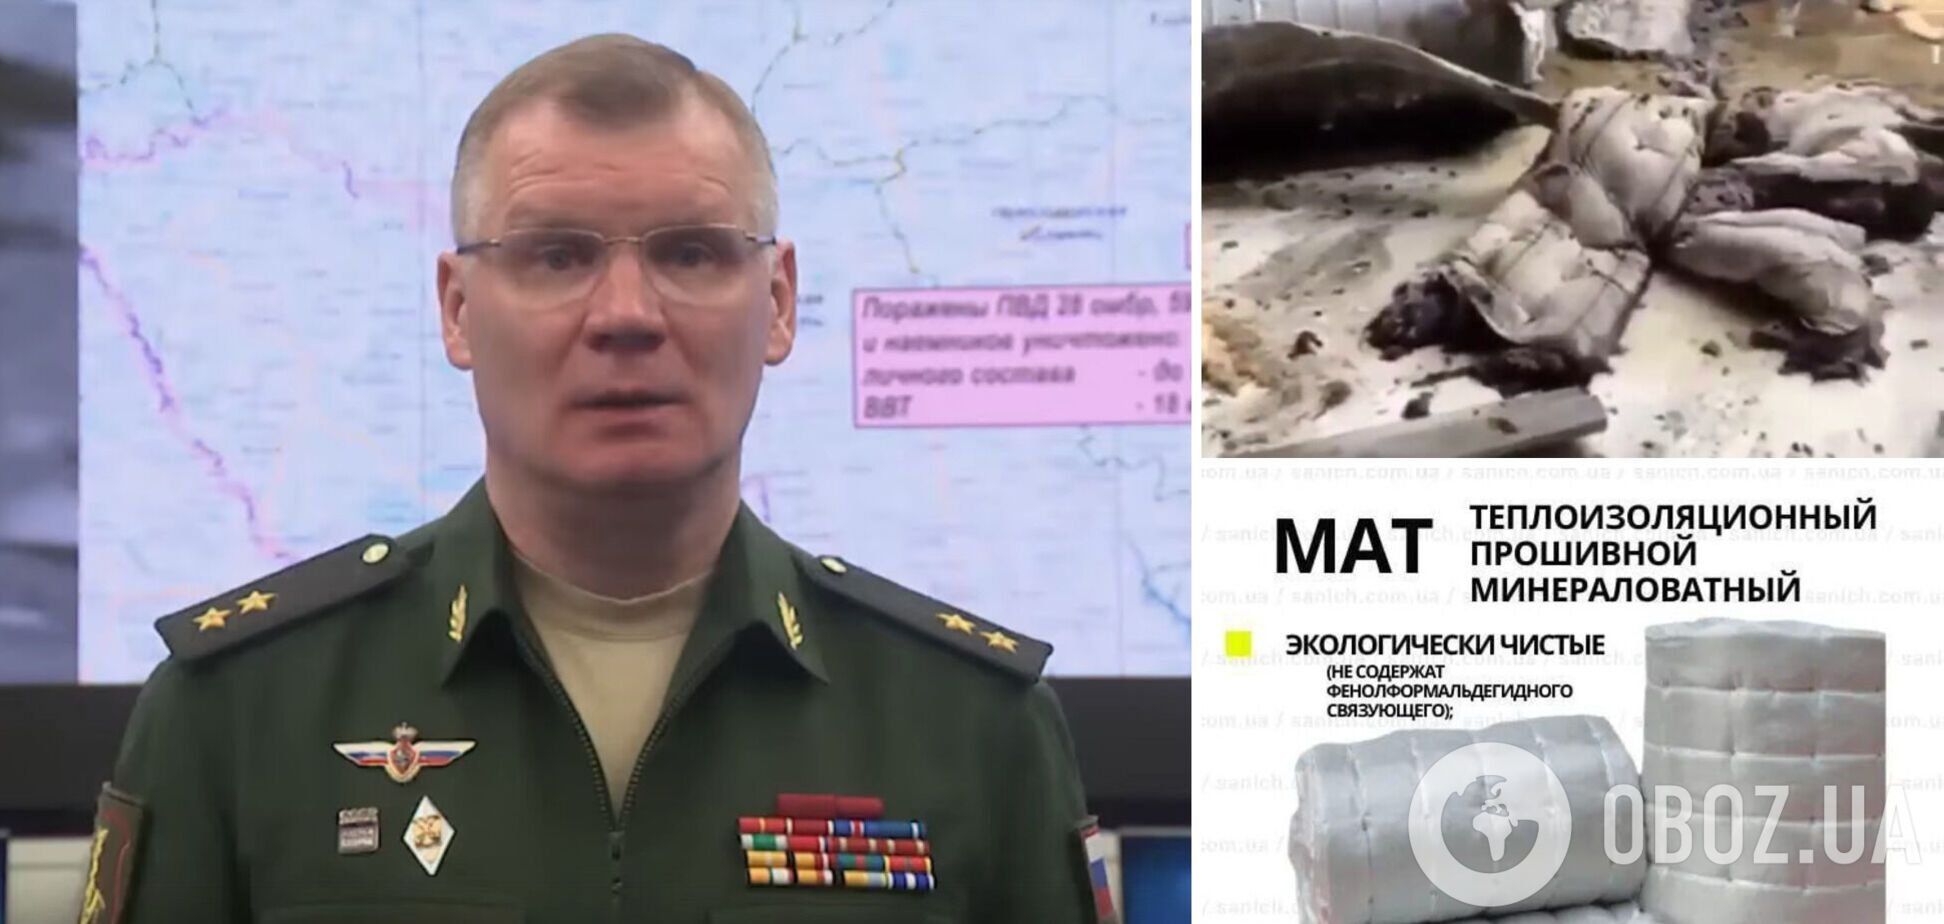 У міноборони РФ розповіли про знищення HIMARS у Дружківці й видали матеріал покрівлі за матраци для 'бойовиків'. Фото і відео